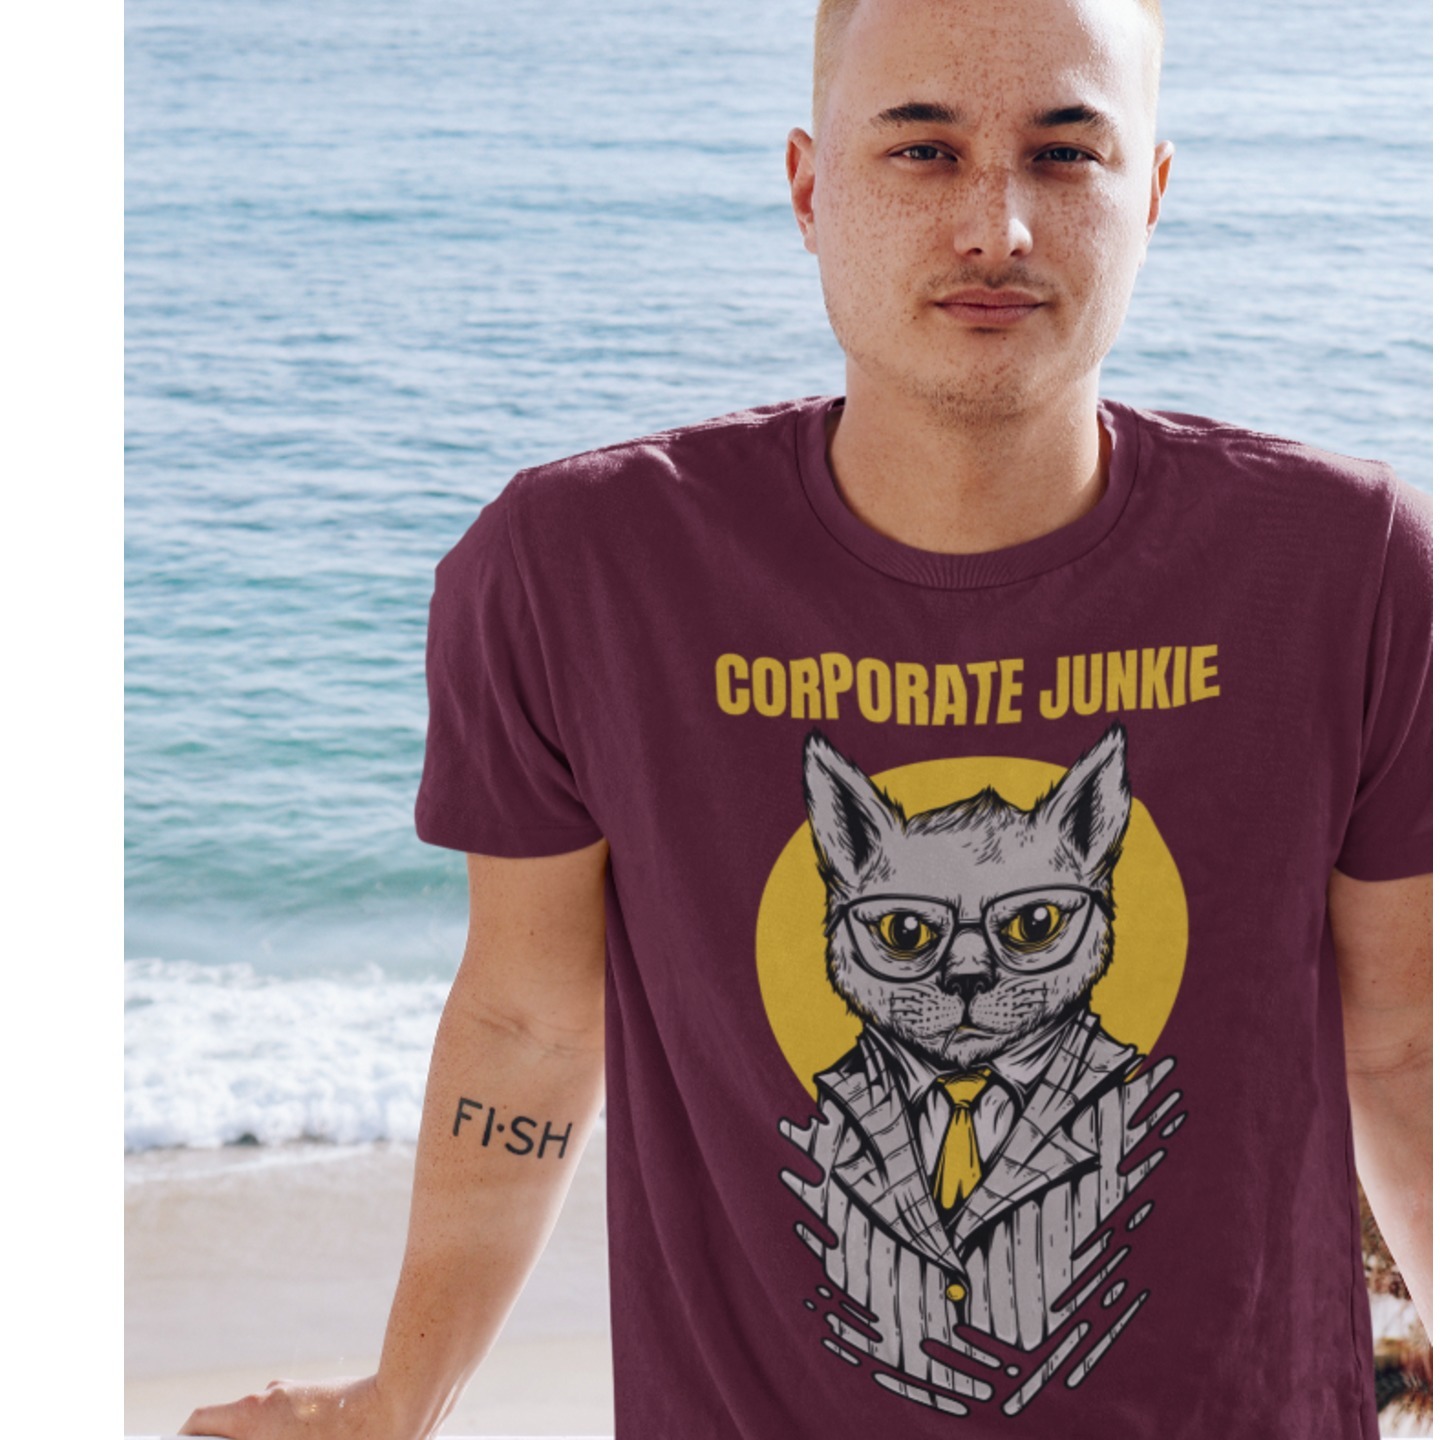 Corporate Junkie Printed Tshirt